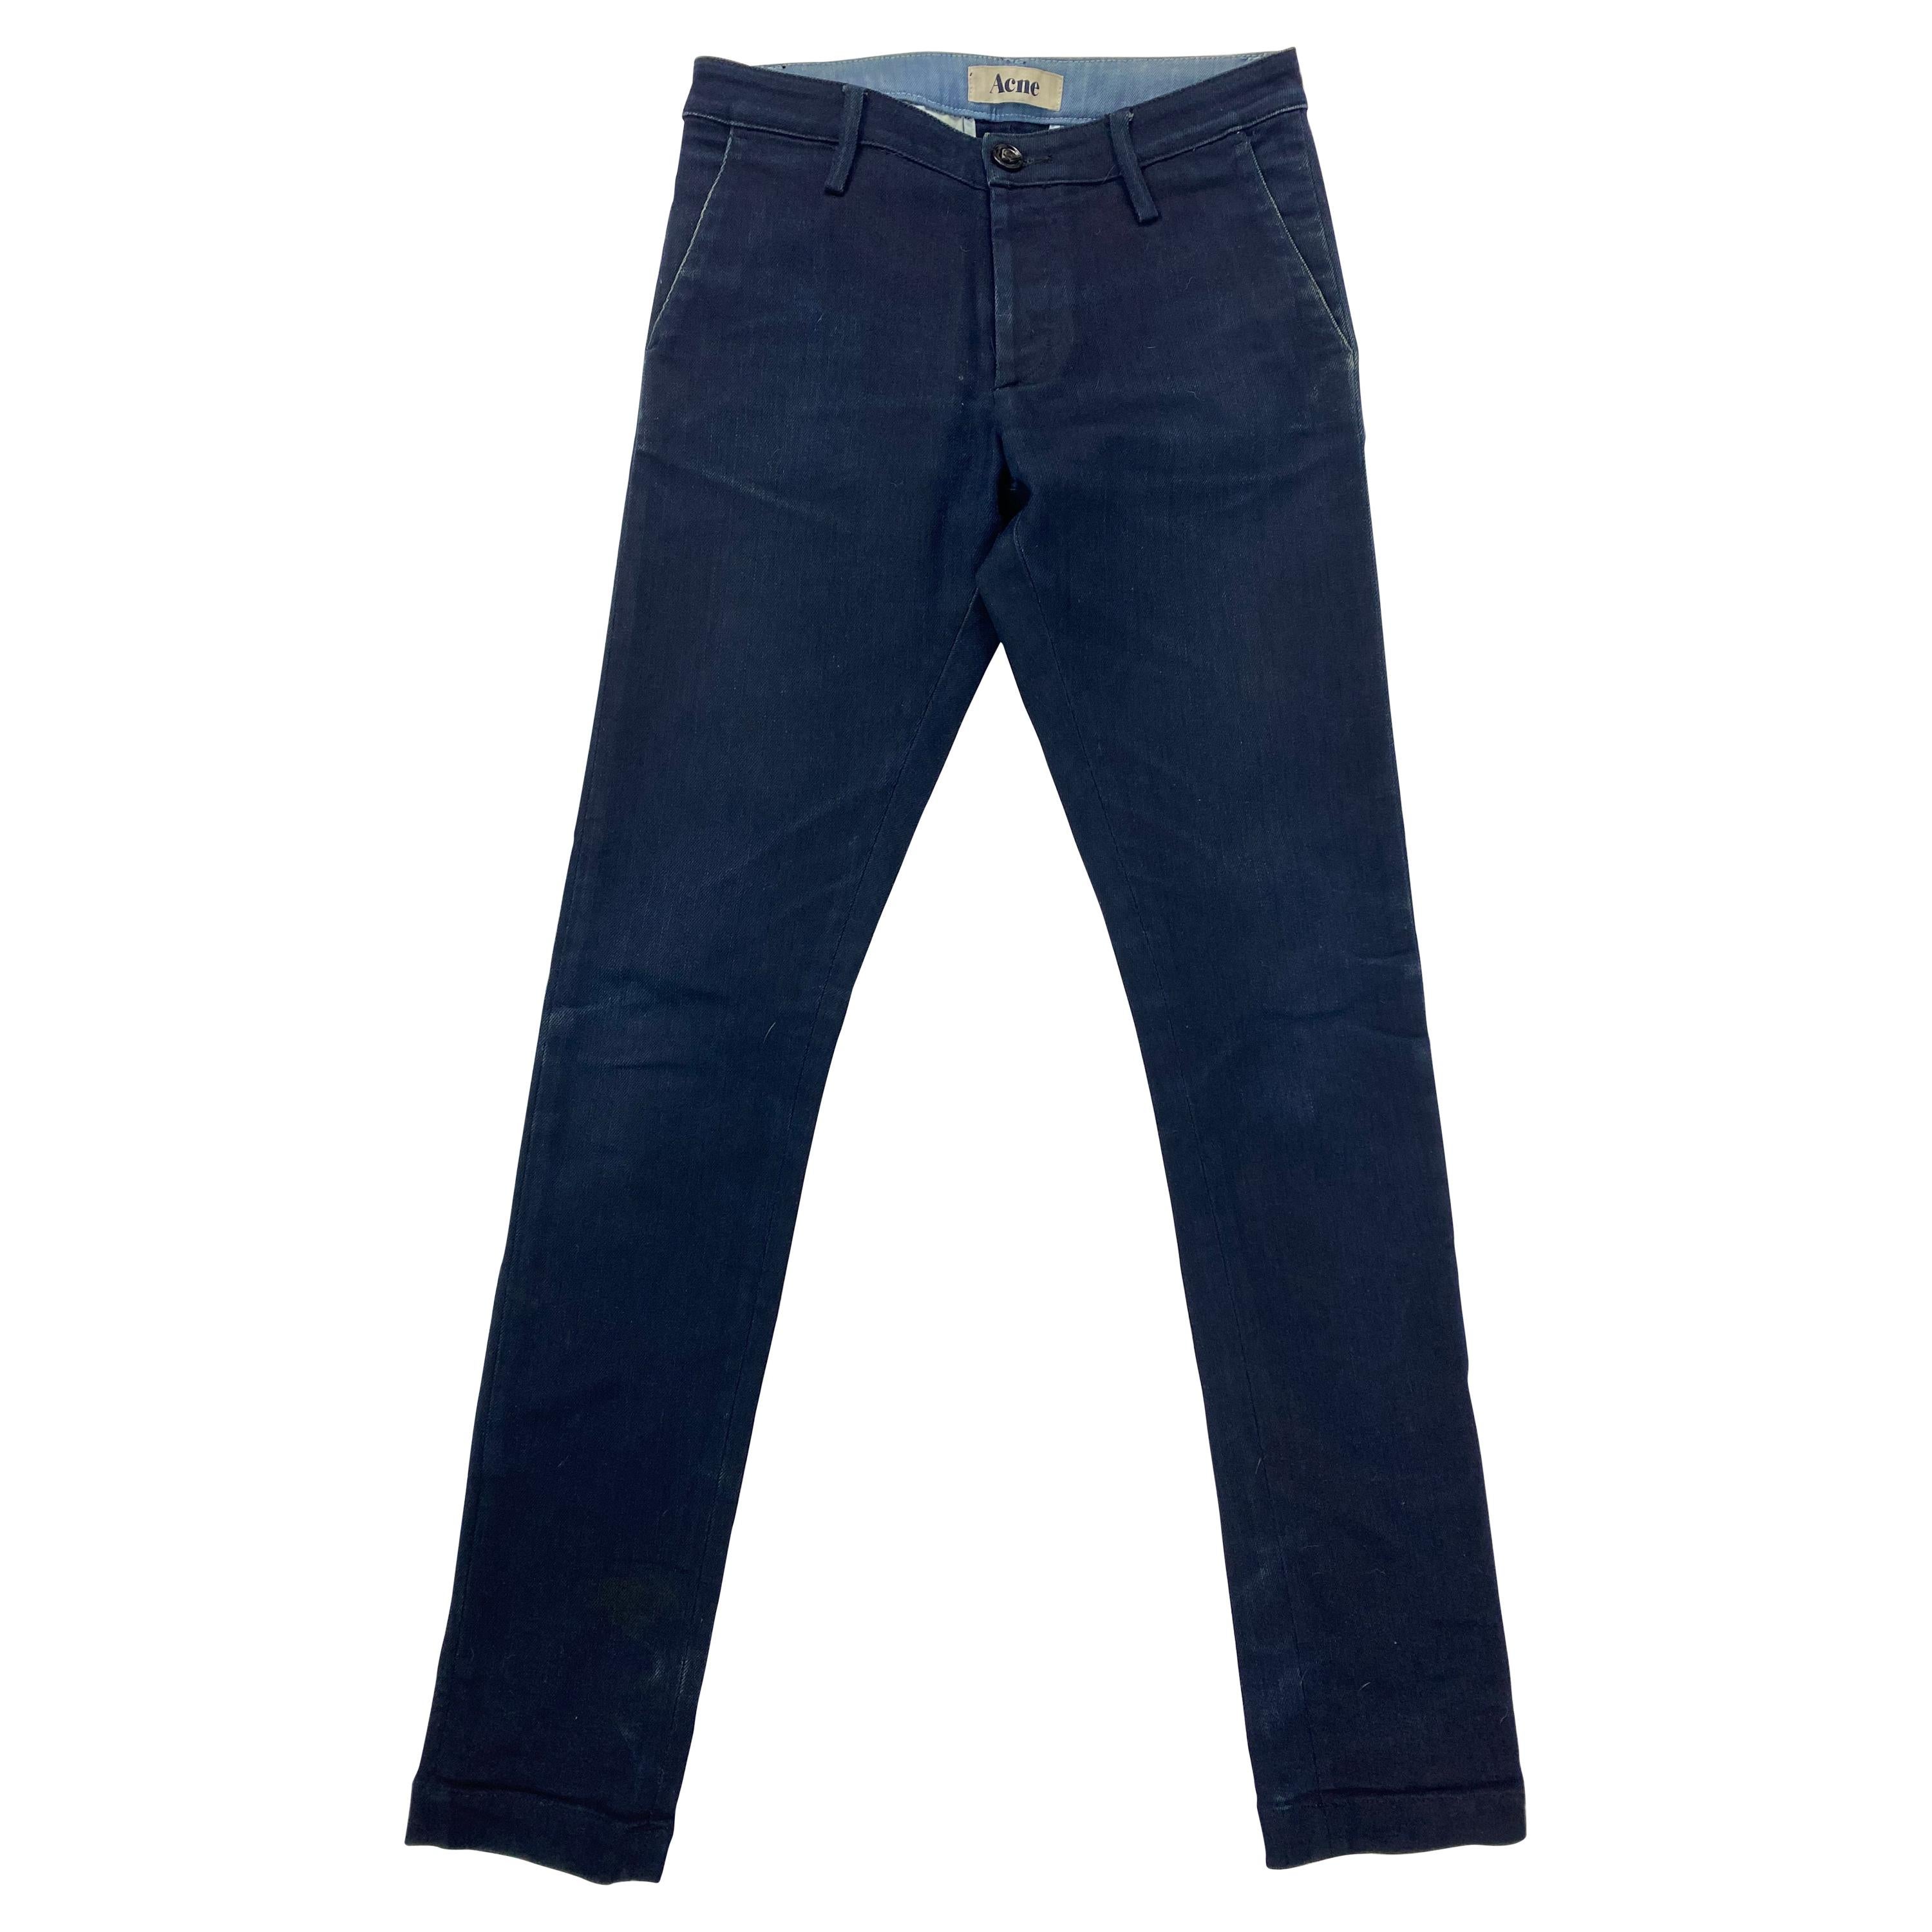 Acne Joy Sharp Blue Denim Jeans Pants, Size 25/32